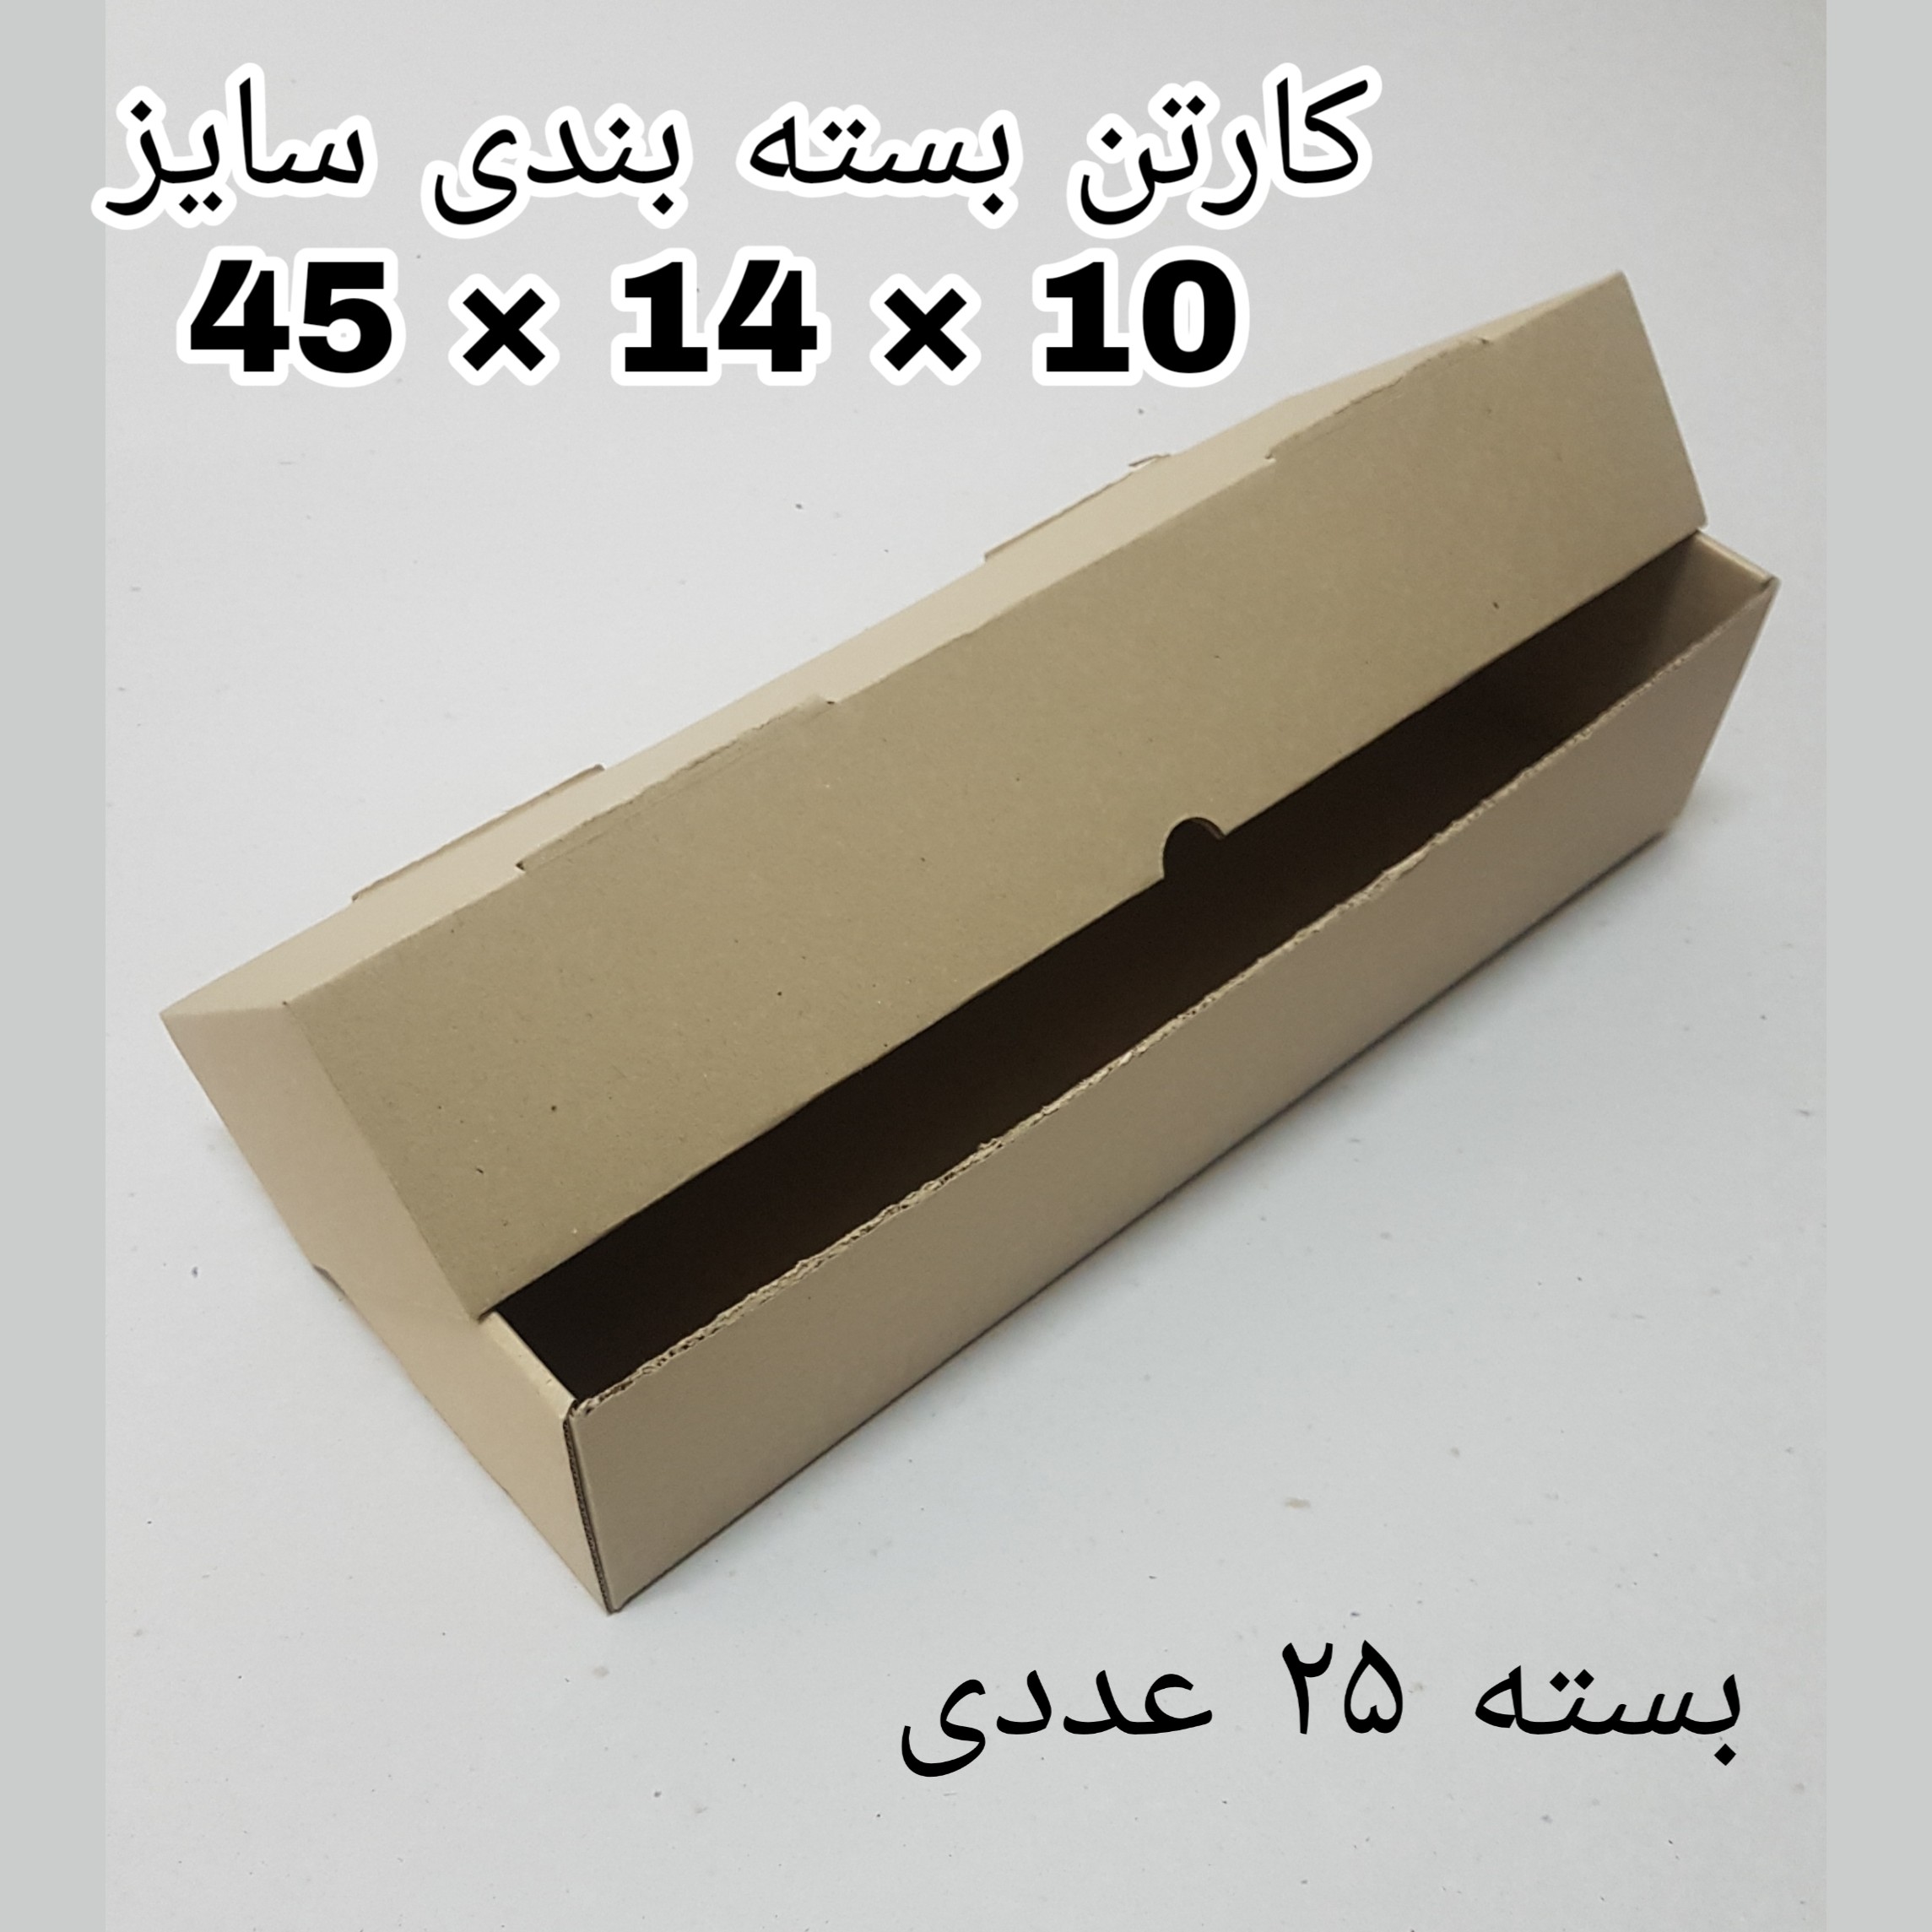 جعبه بسته بندی مدل K45-14-10 بسته ۲۵ عددی